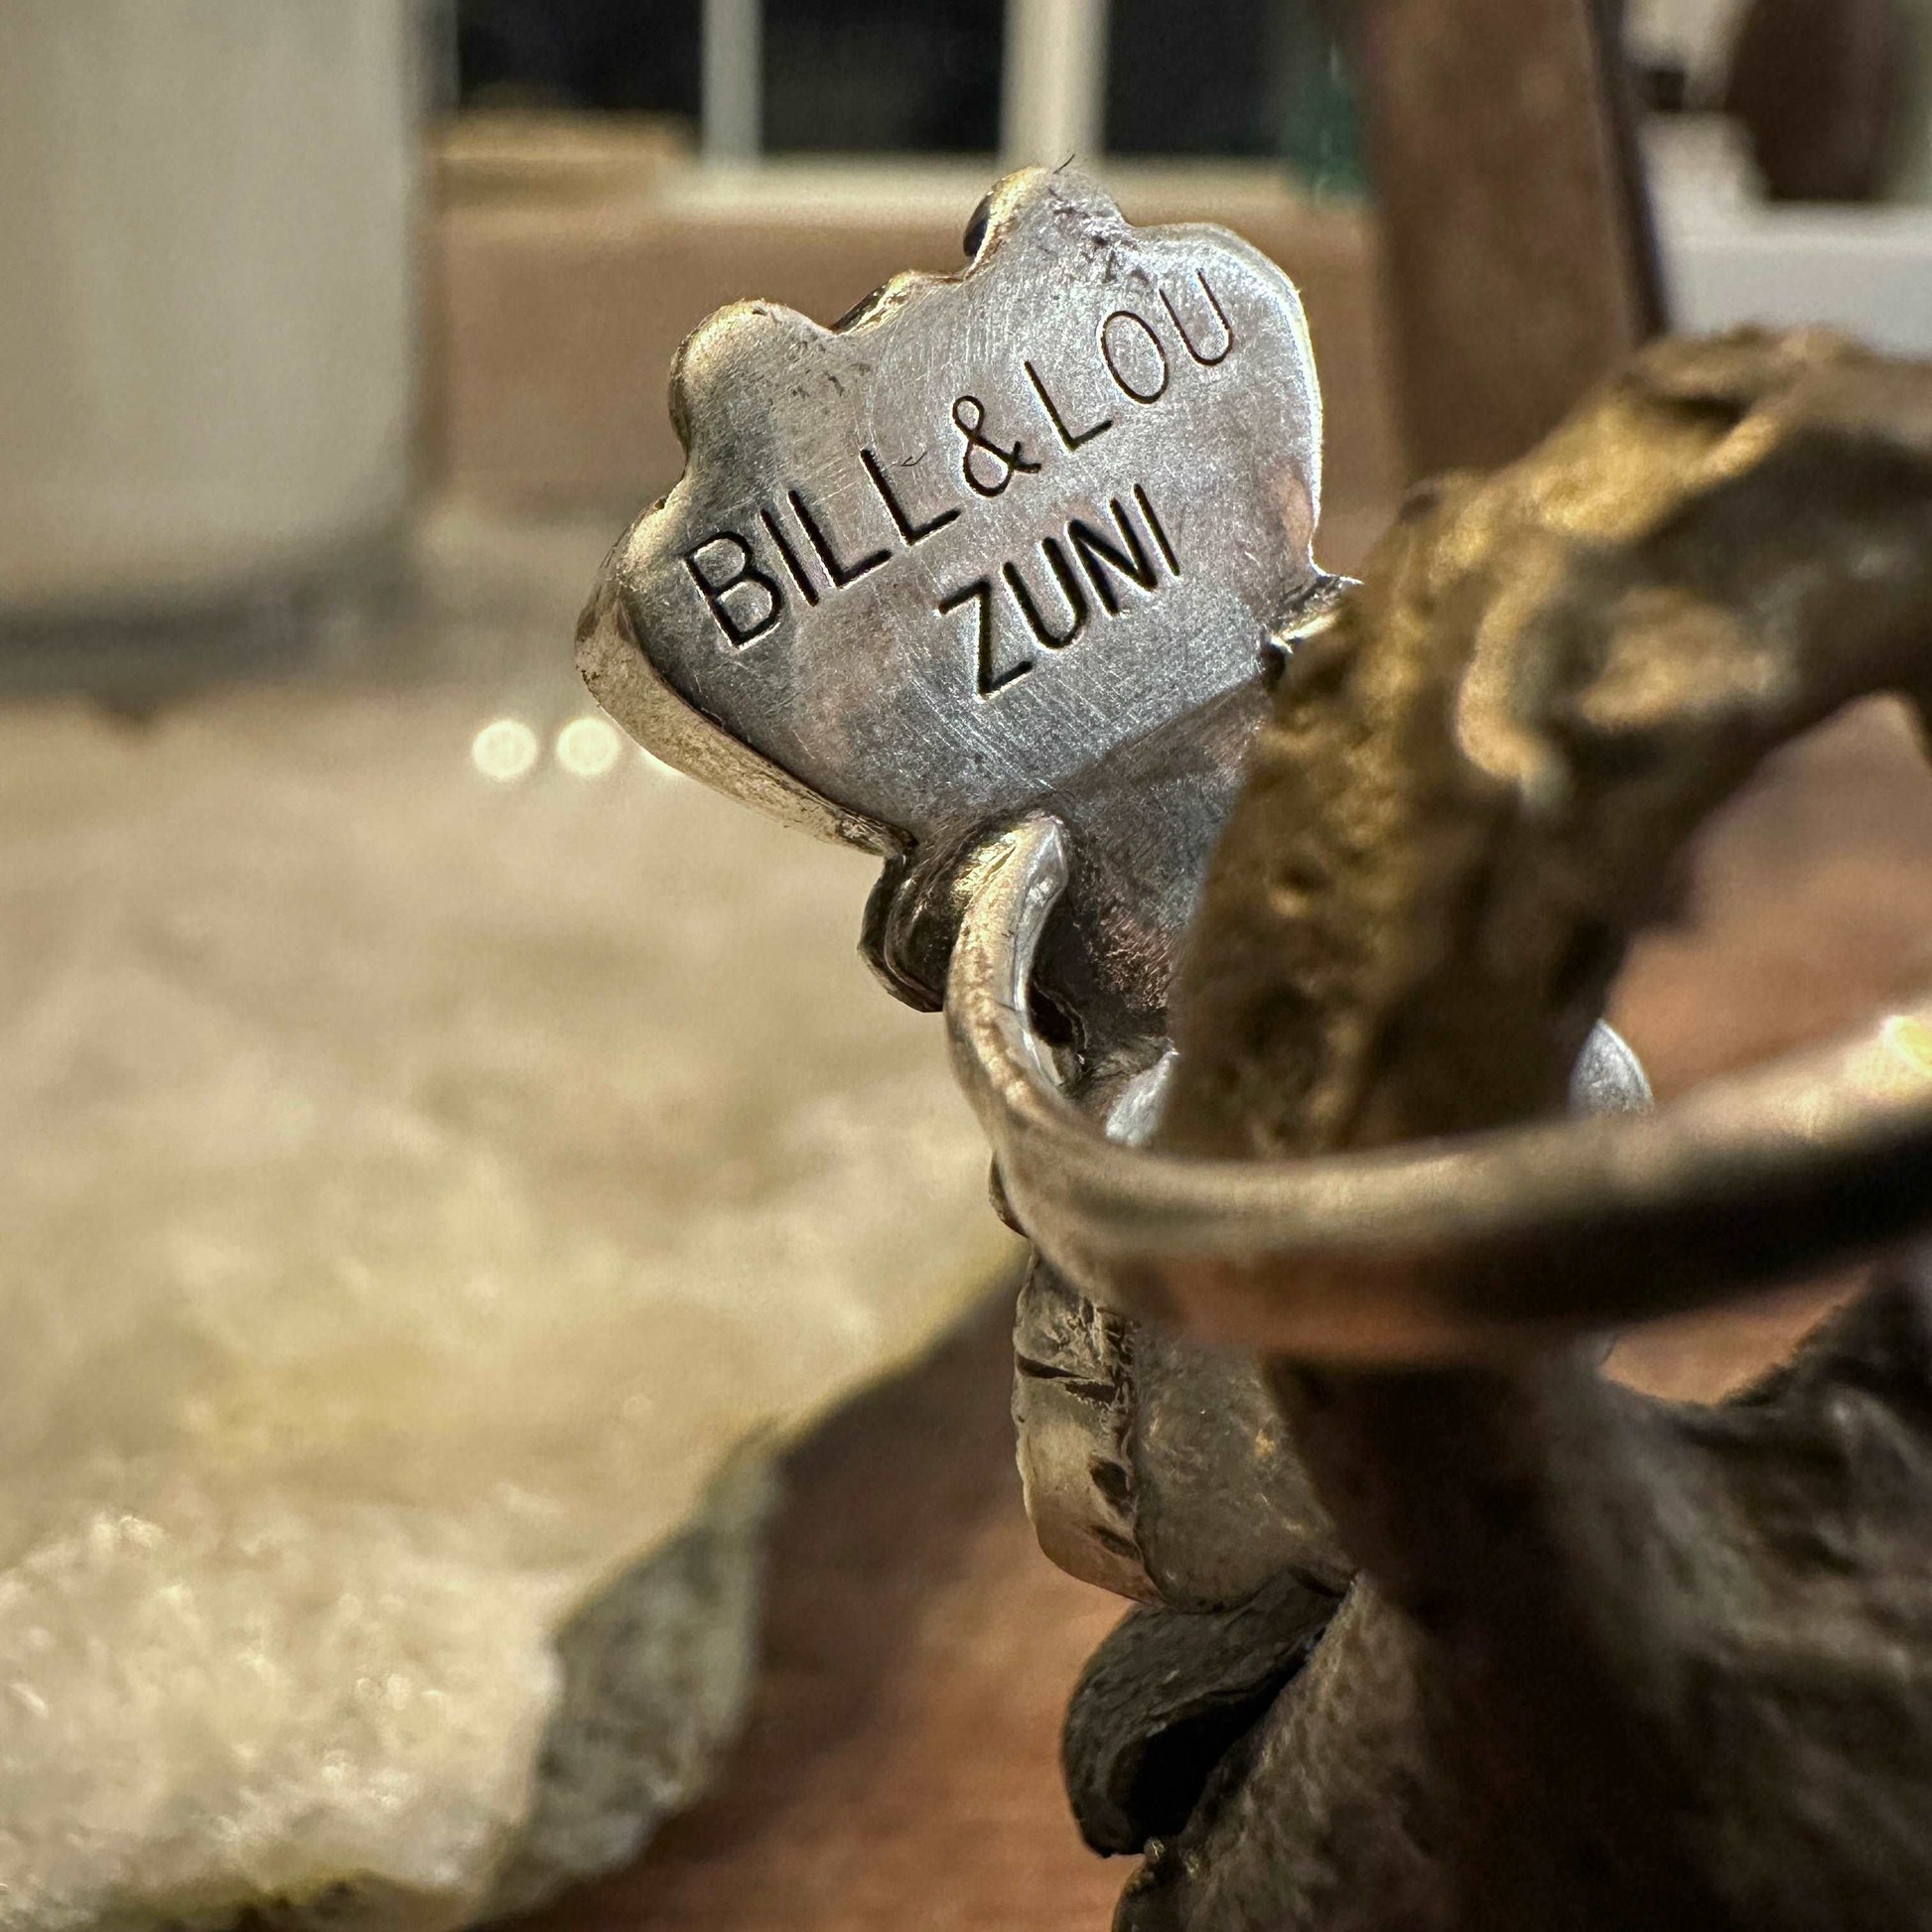 Bill & Lou Zuni Vintage Coral Ring Size 6.25